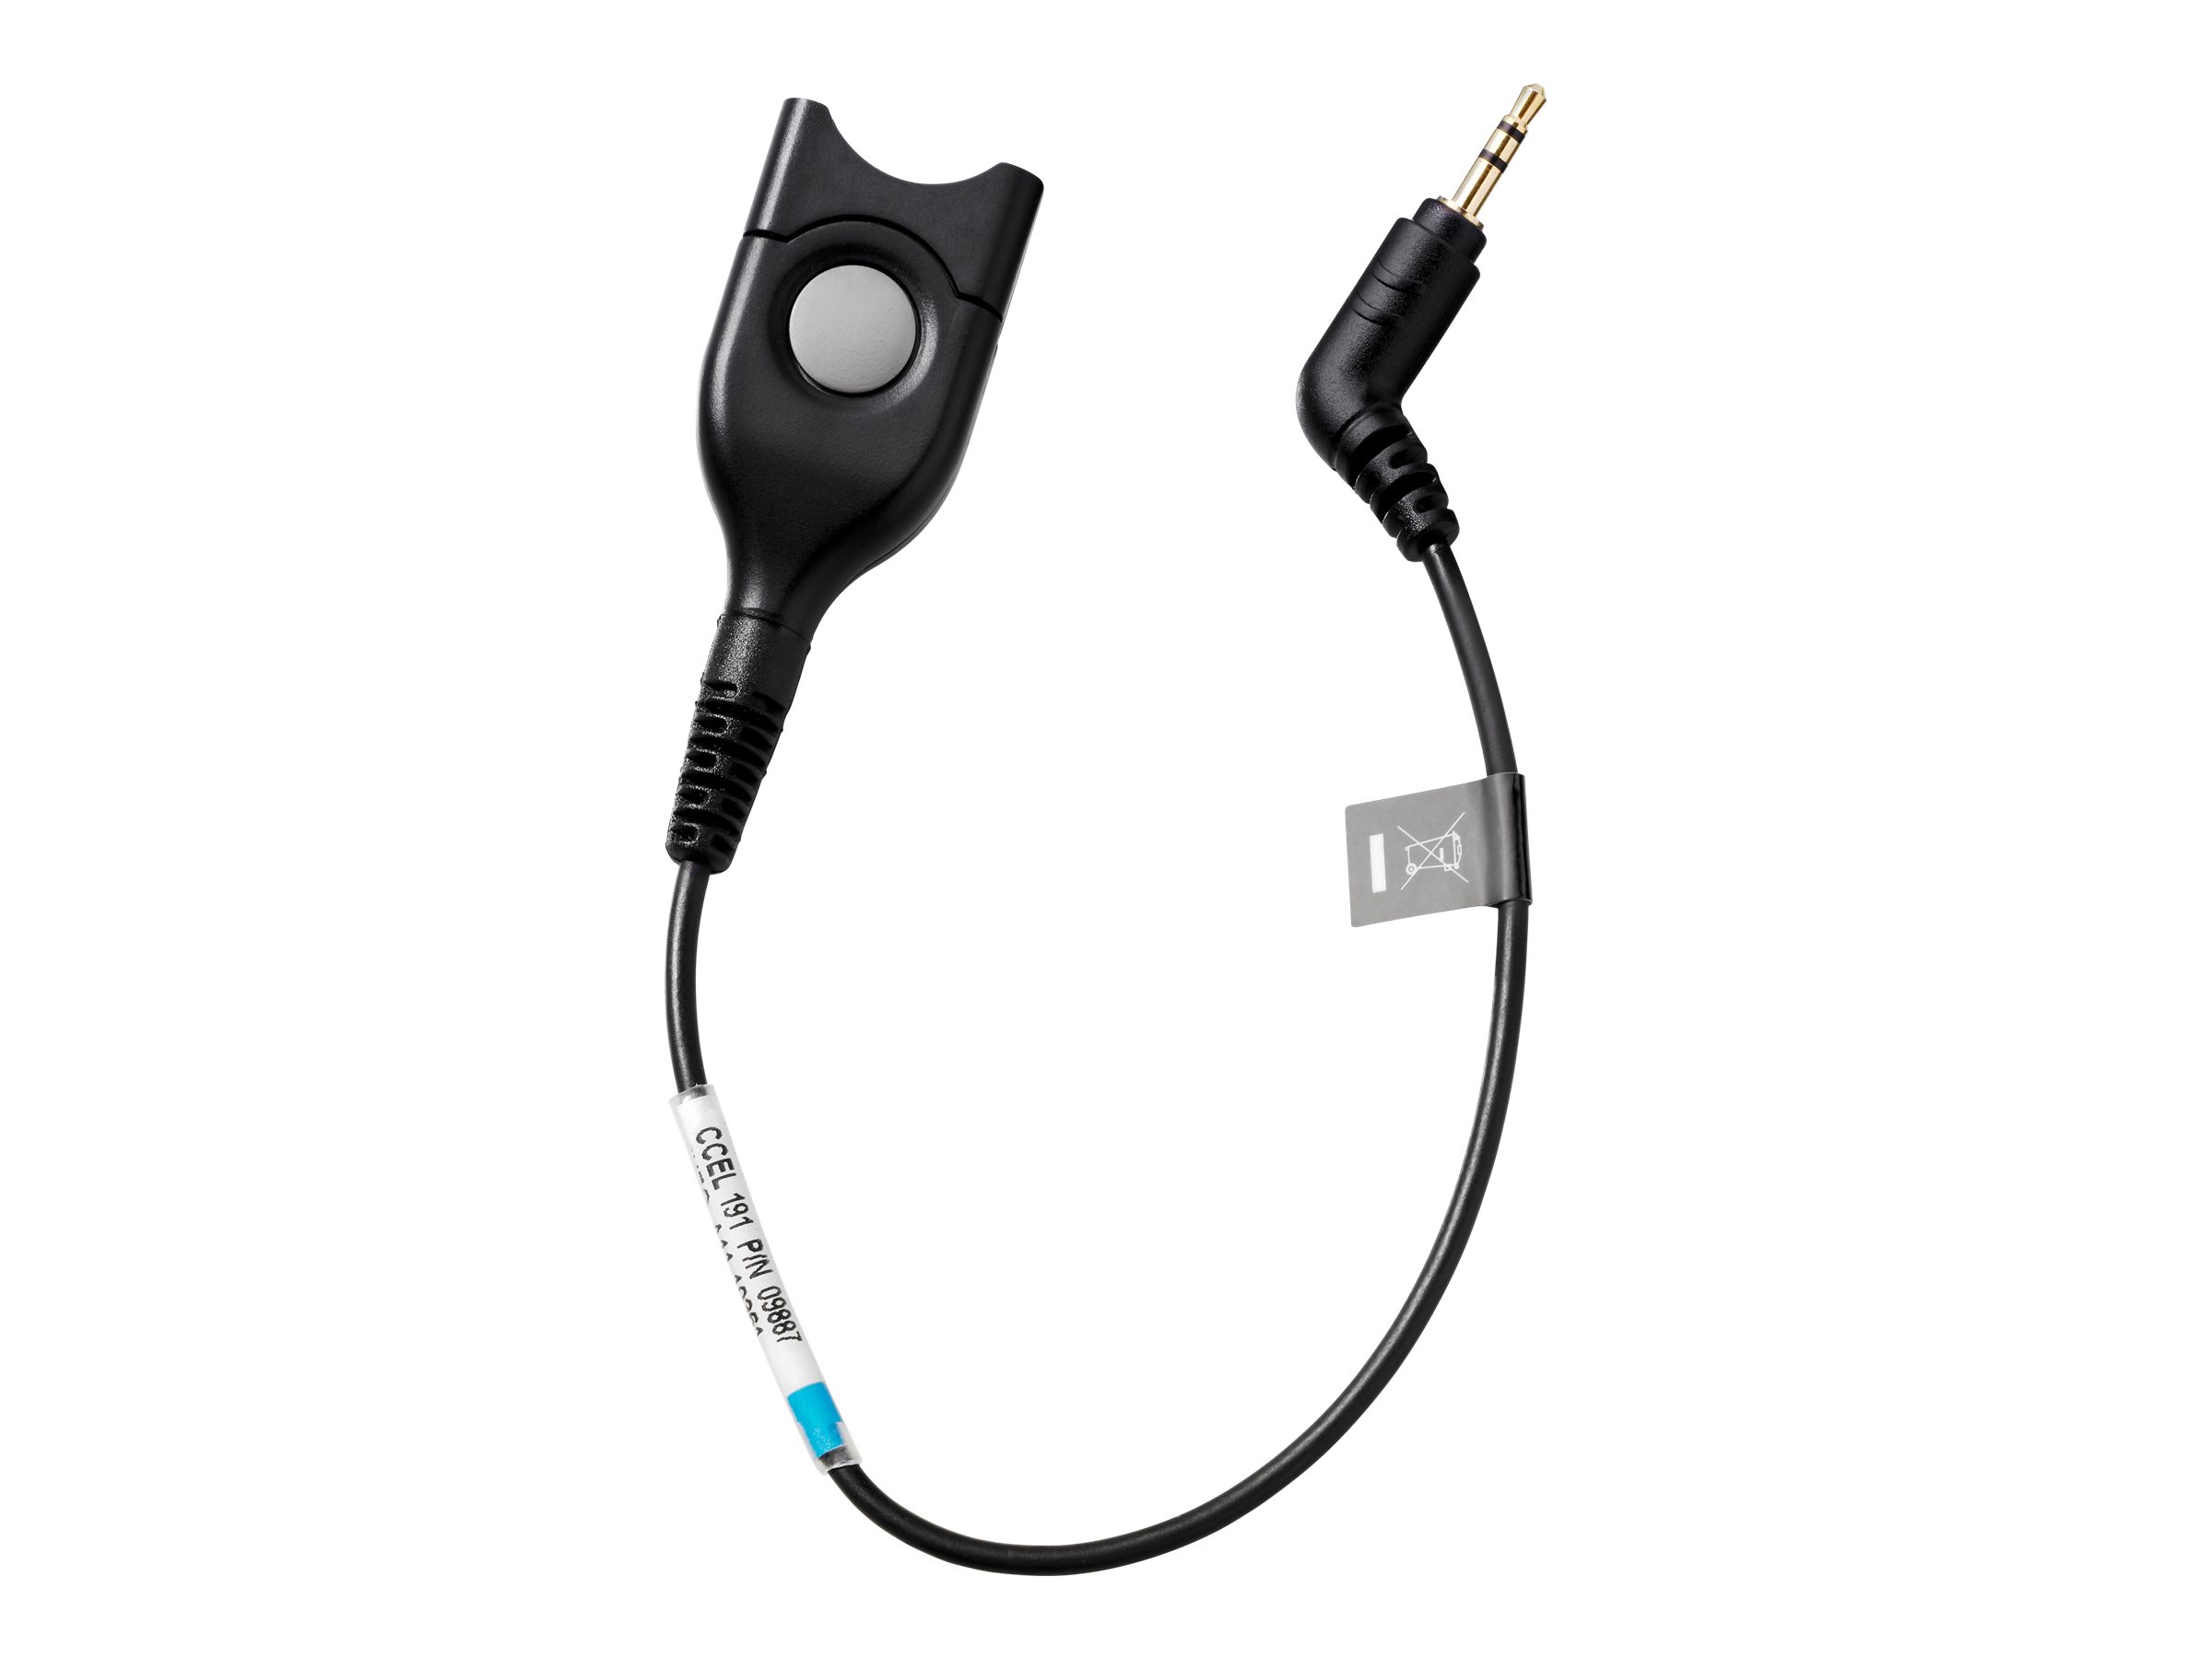 EPOS CCEL 191 - Headset-Kabel - EasyDisconnect zu 3-poliger Micro-Anschluss mnnlich - Anschlusskabel mit Standard-Empfindlichke